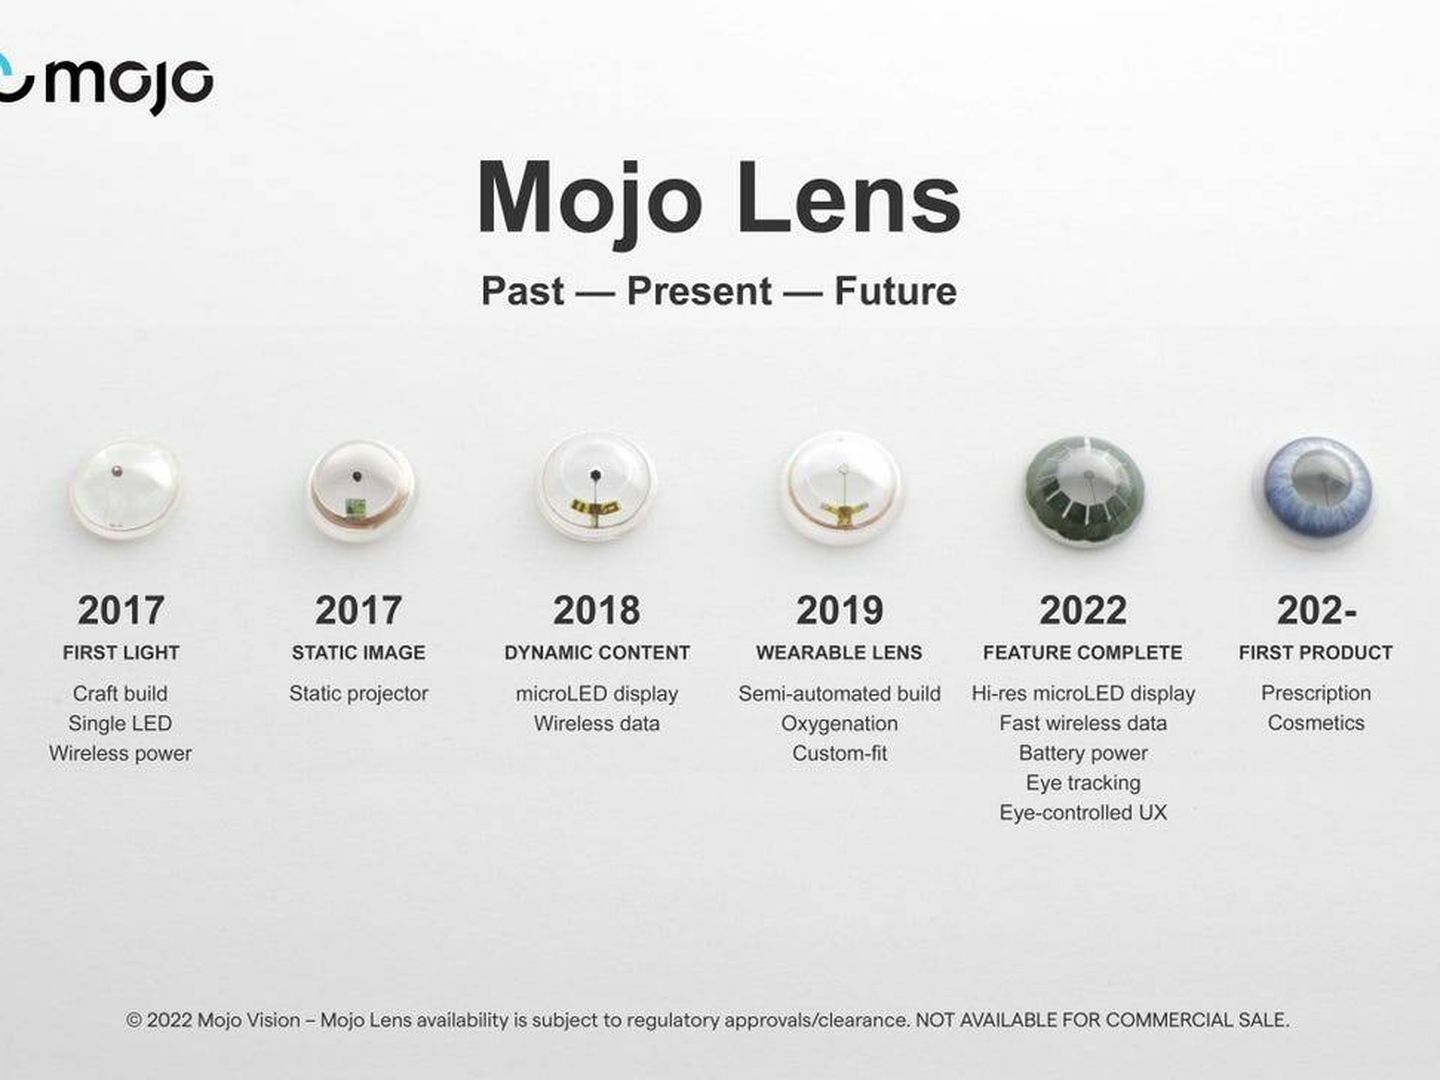 La evolución de las lentillas de Mojo. (Mojo Vision)